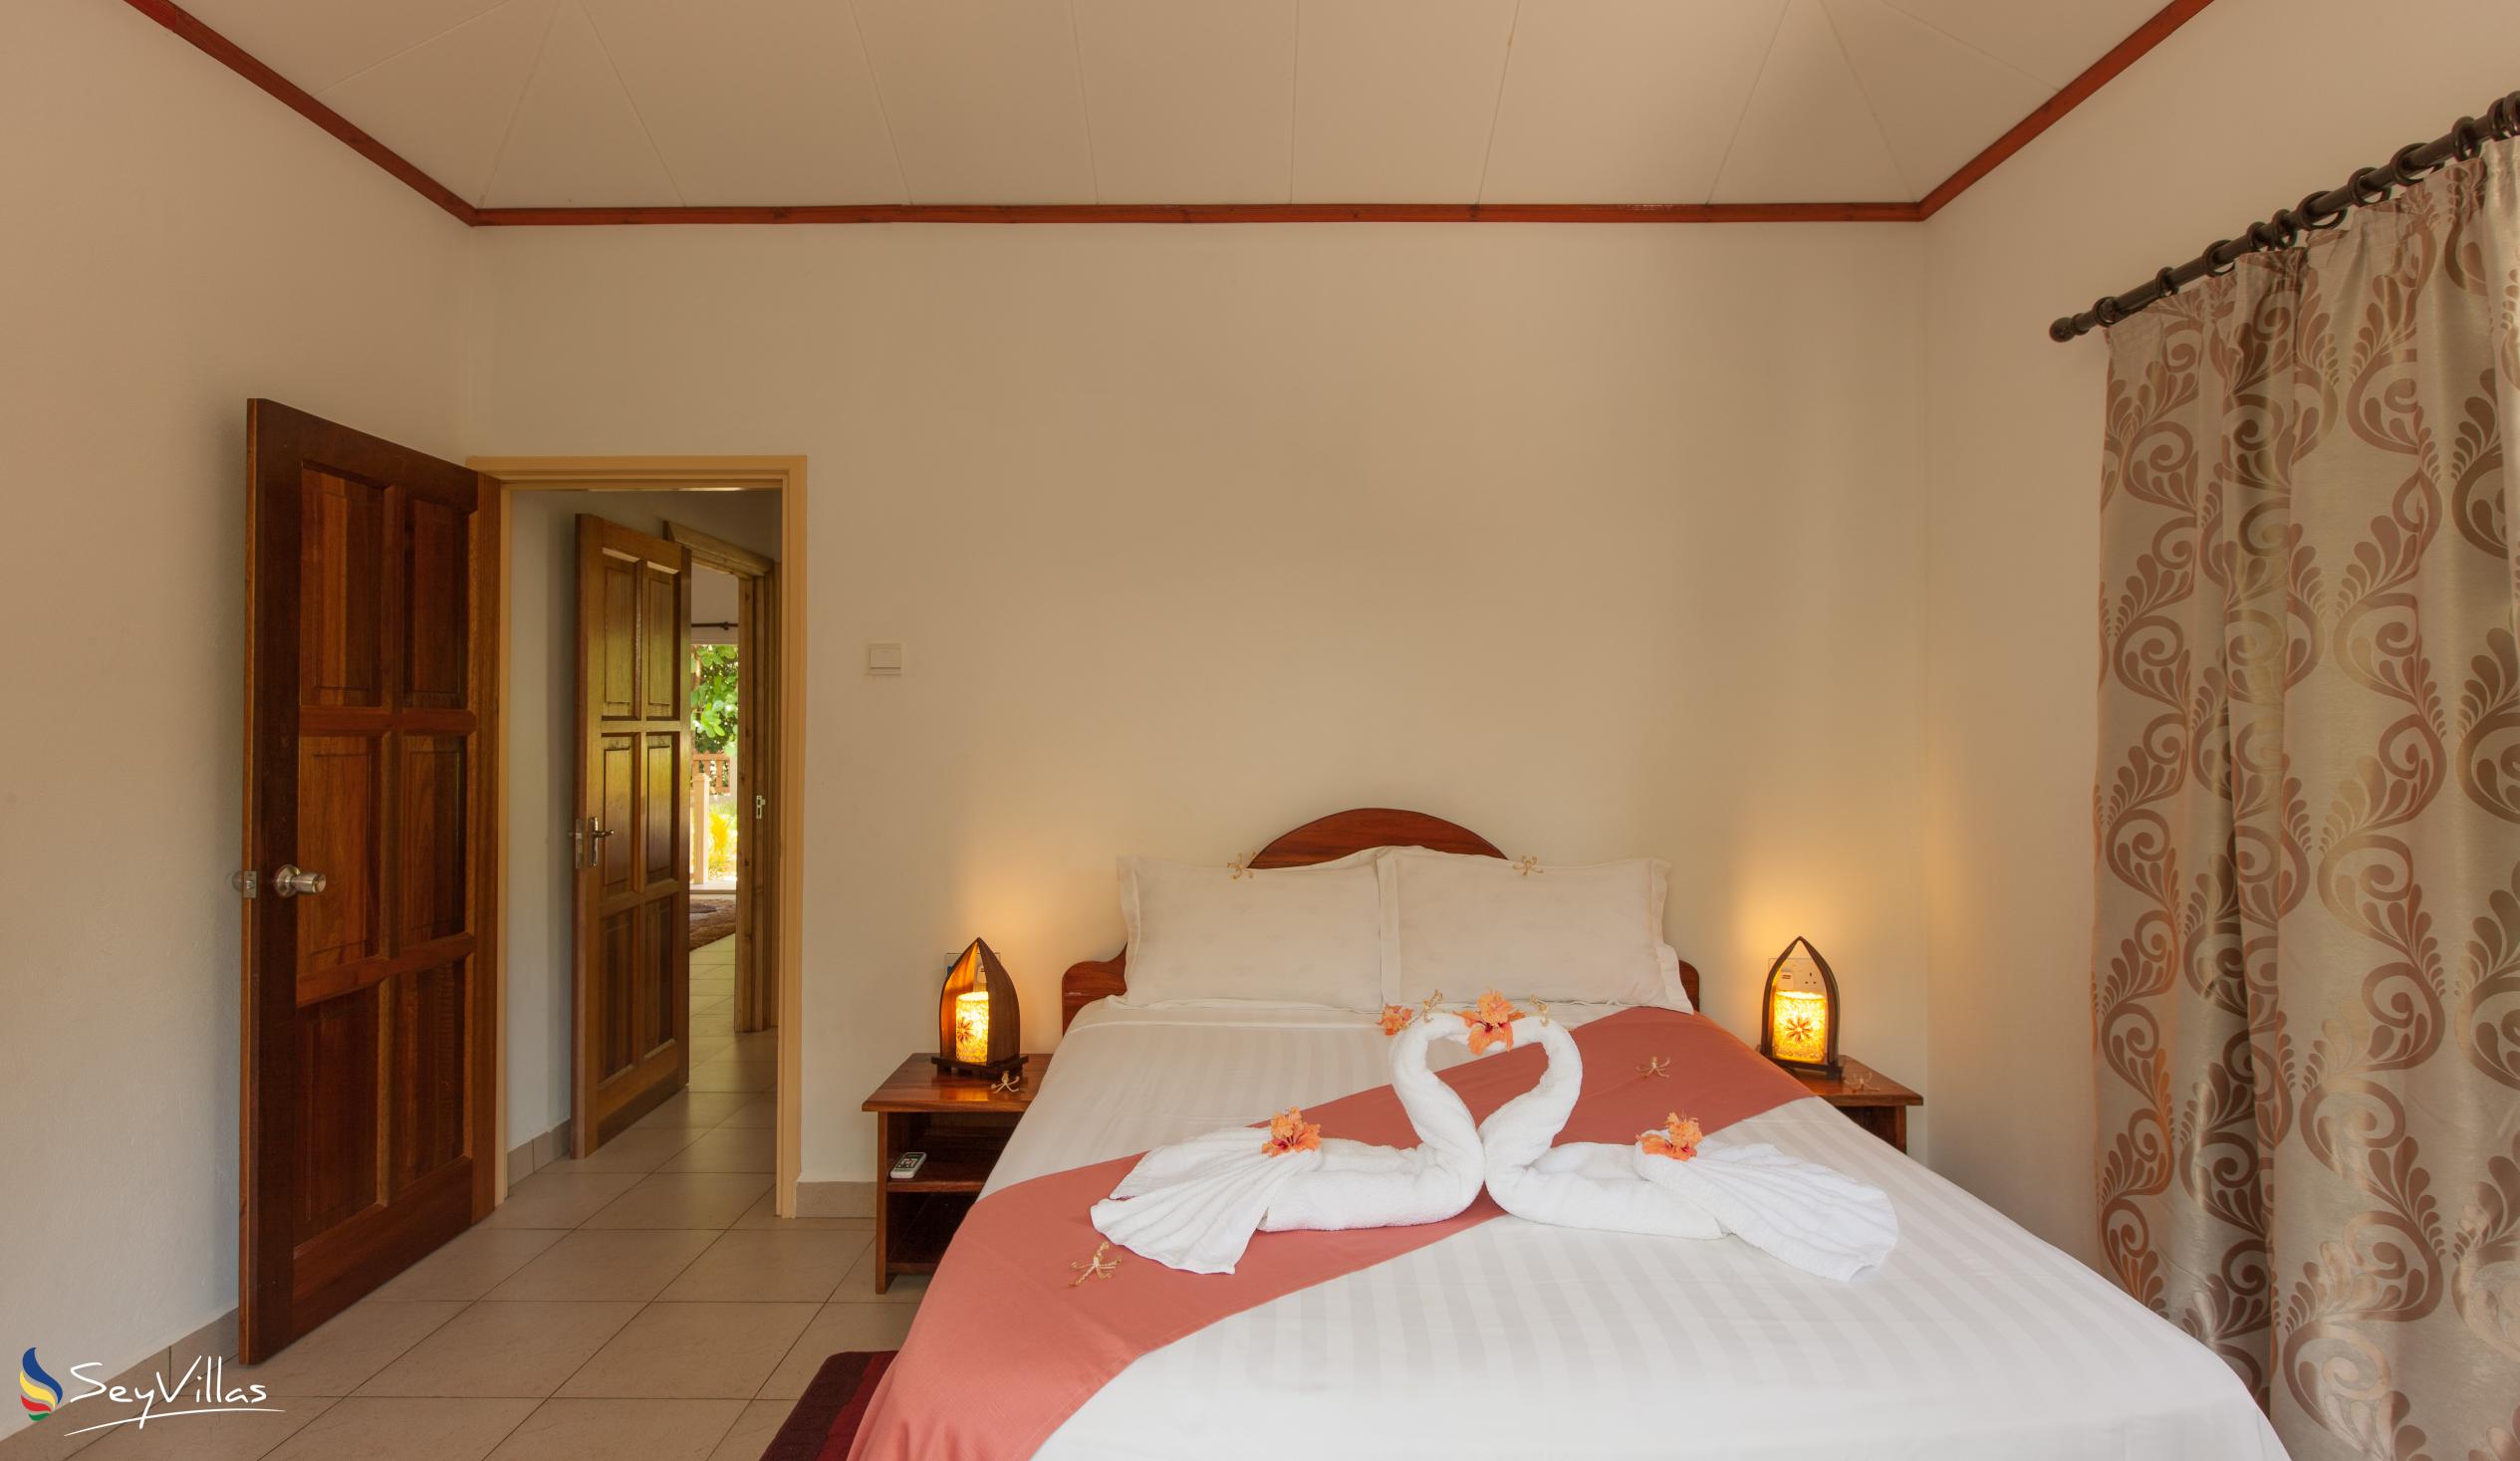 Foto 24: Hostellerie La Digue - Chalet mit 3 Schlafzimmern - La Digue (Seychellen)